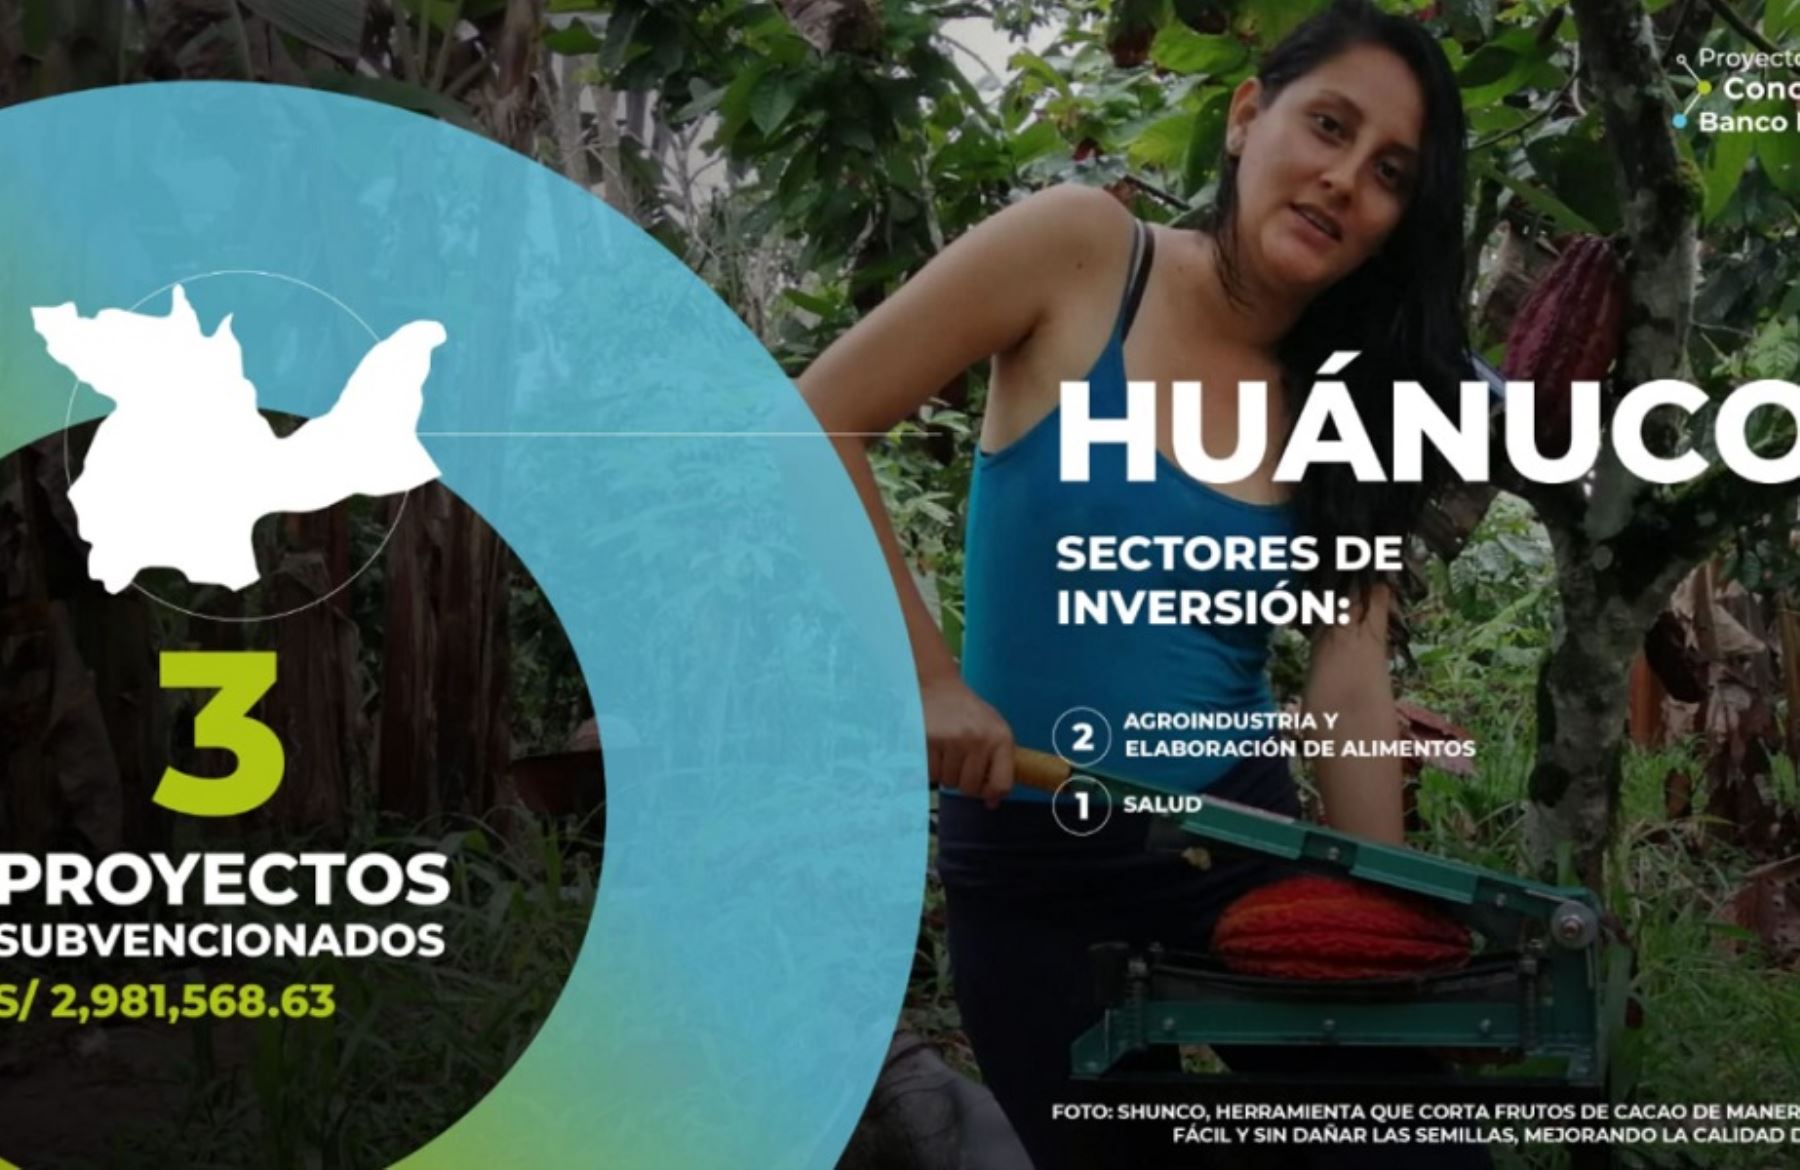 Concytec financia proyectos en salud, agroindustria y elaboración de alimentos en la región Huánuco.